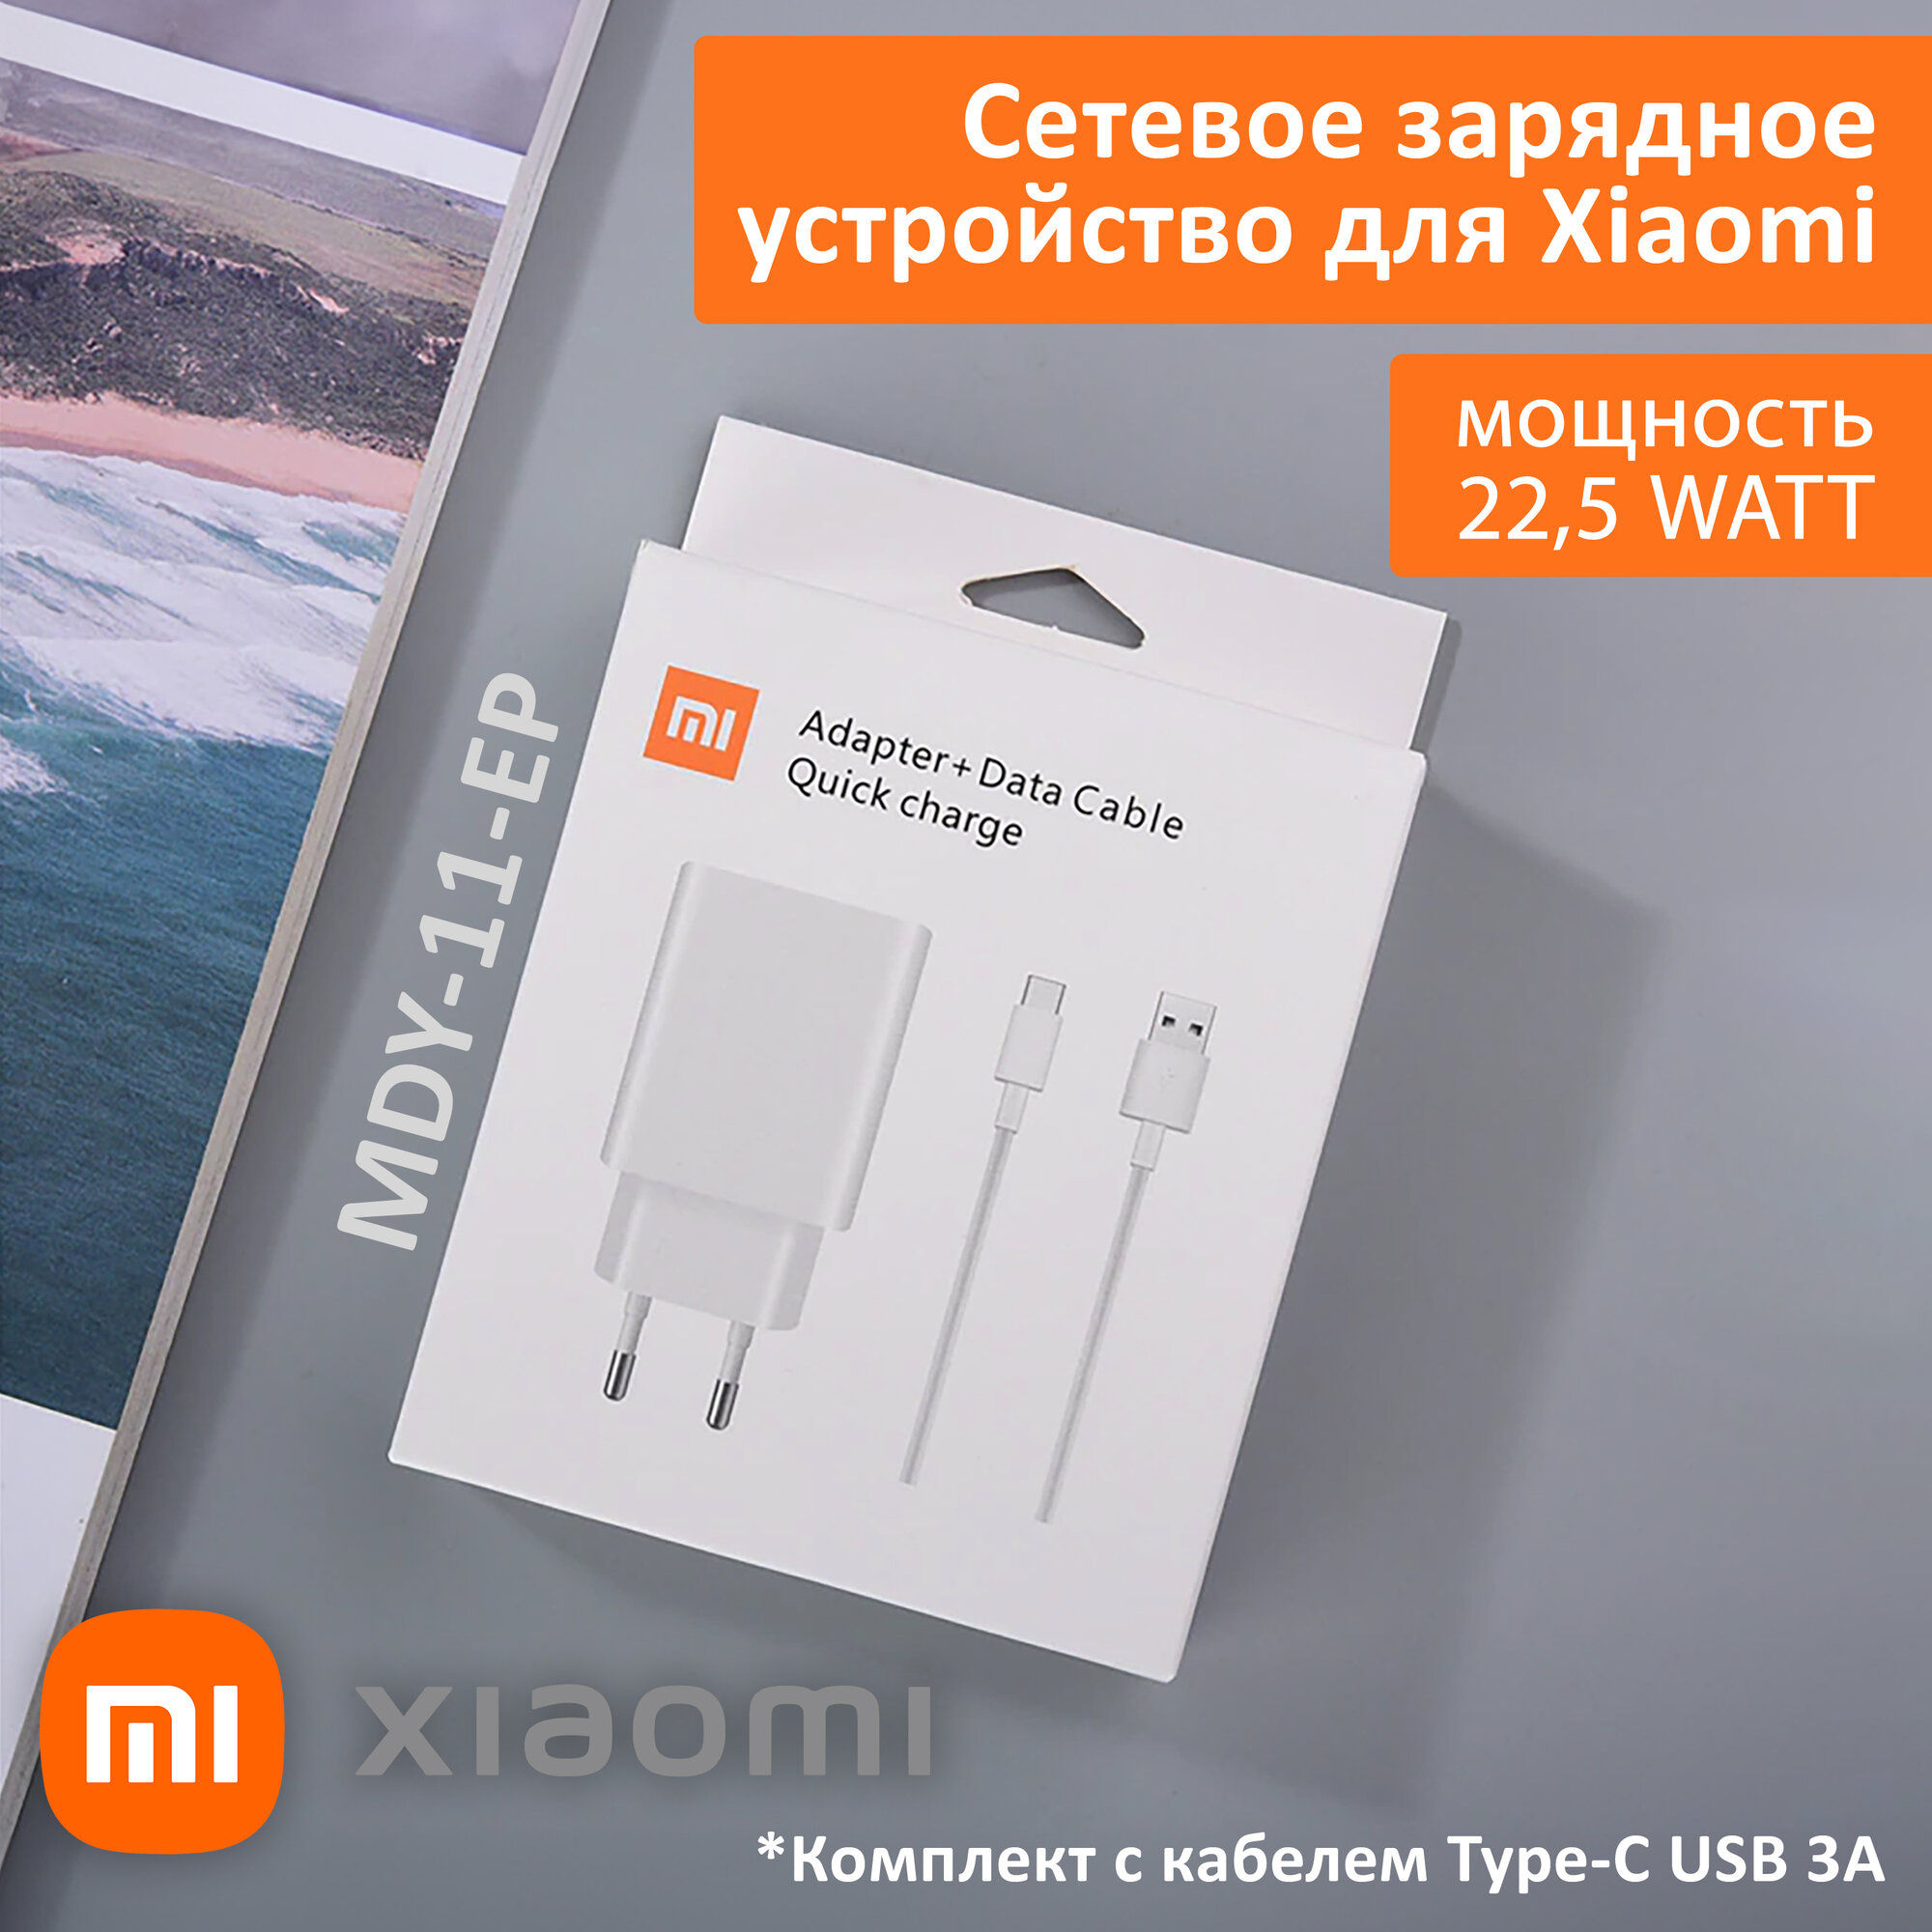 Сетевое зарядное устройство для Xiaomi 22,5W. Charger адаптер с USB входом (MDY-11-EP) в комплекте с кабелем Type-C USB 3A